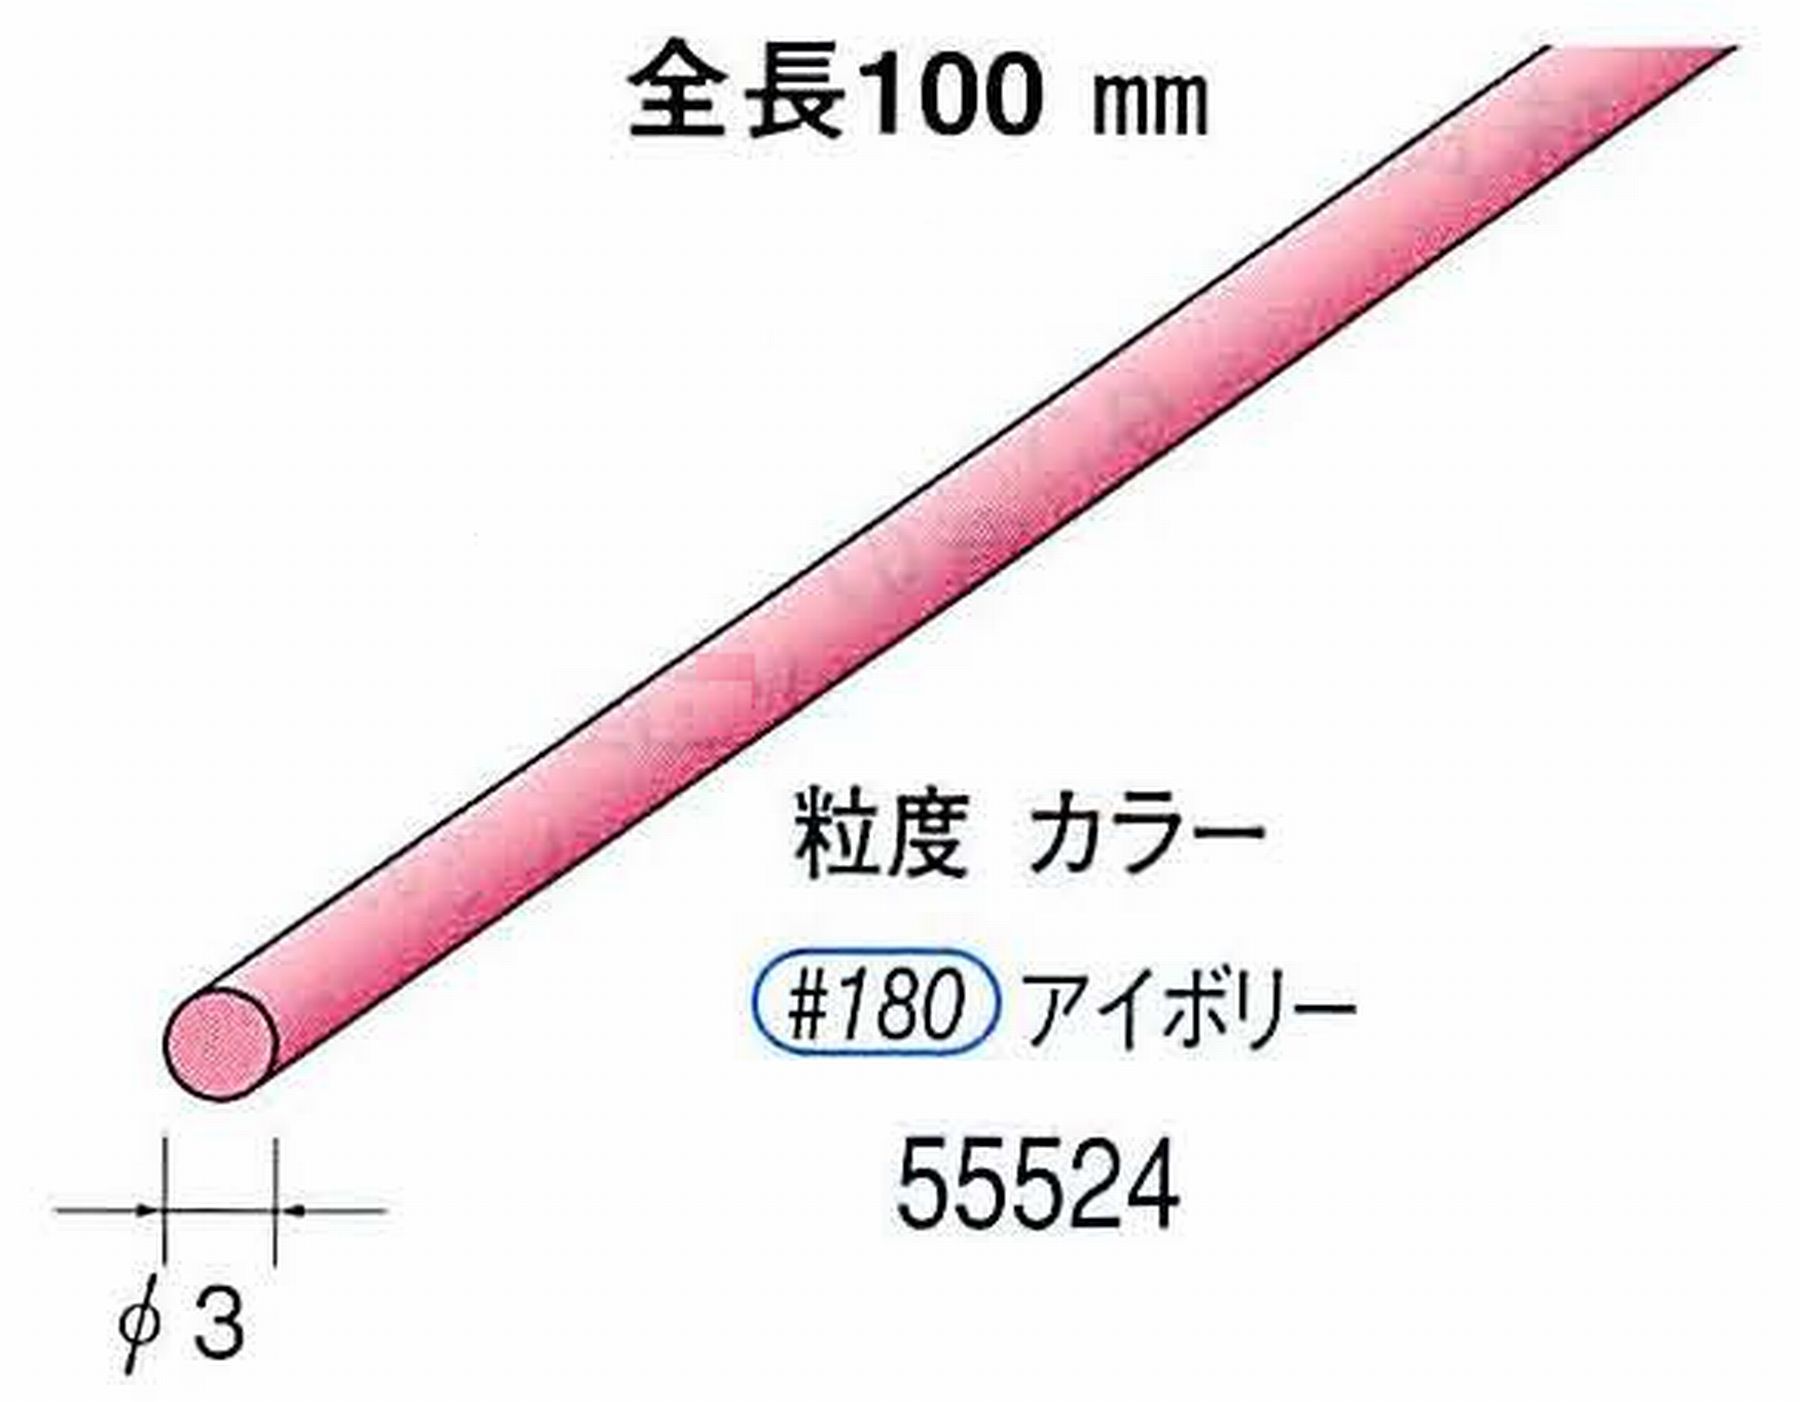 ナカニシ/NAKANISHI セラファイバー砥石 全長100mm アイボリー φ3mm 55524